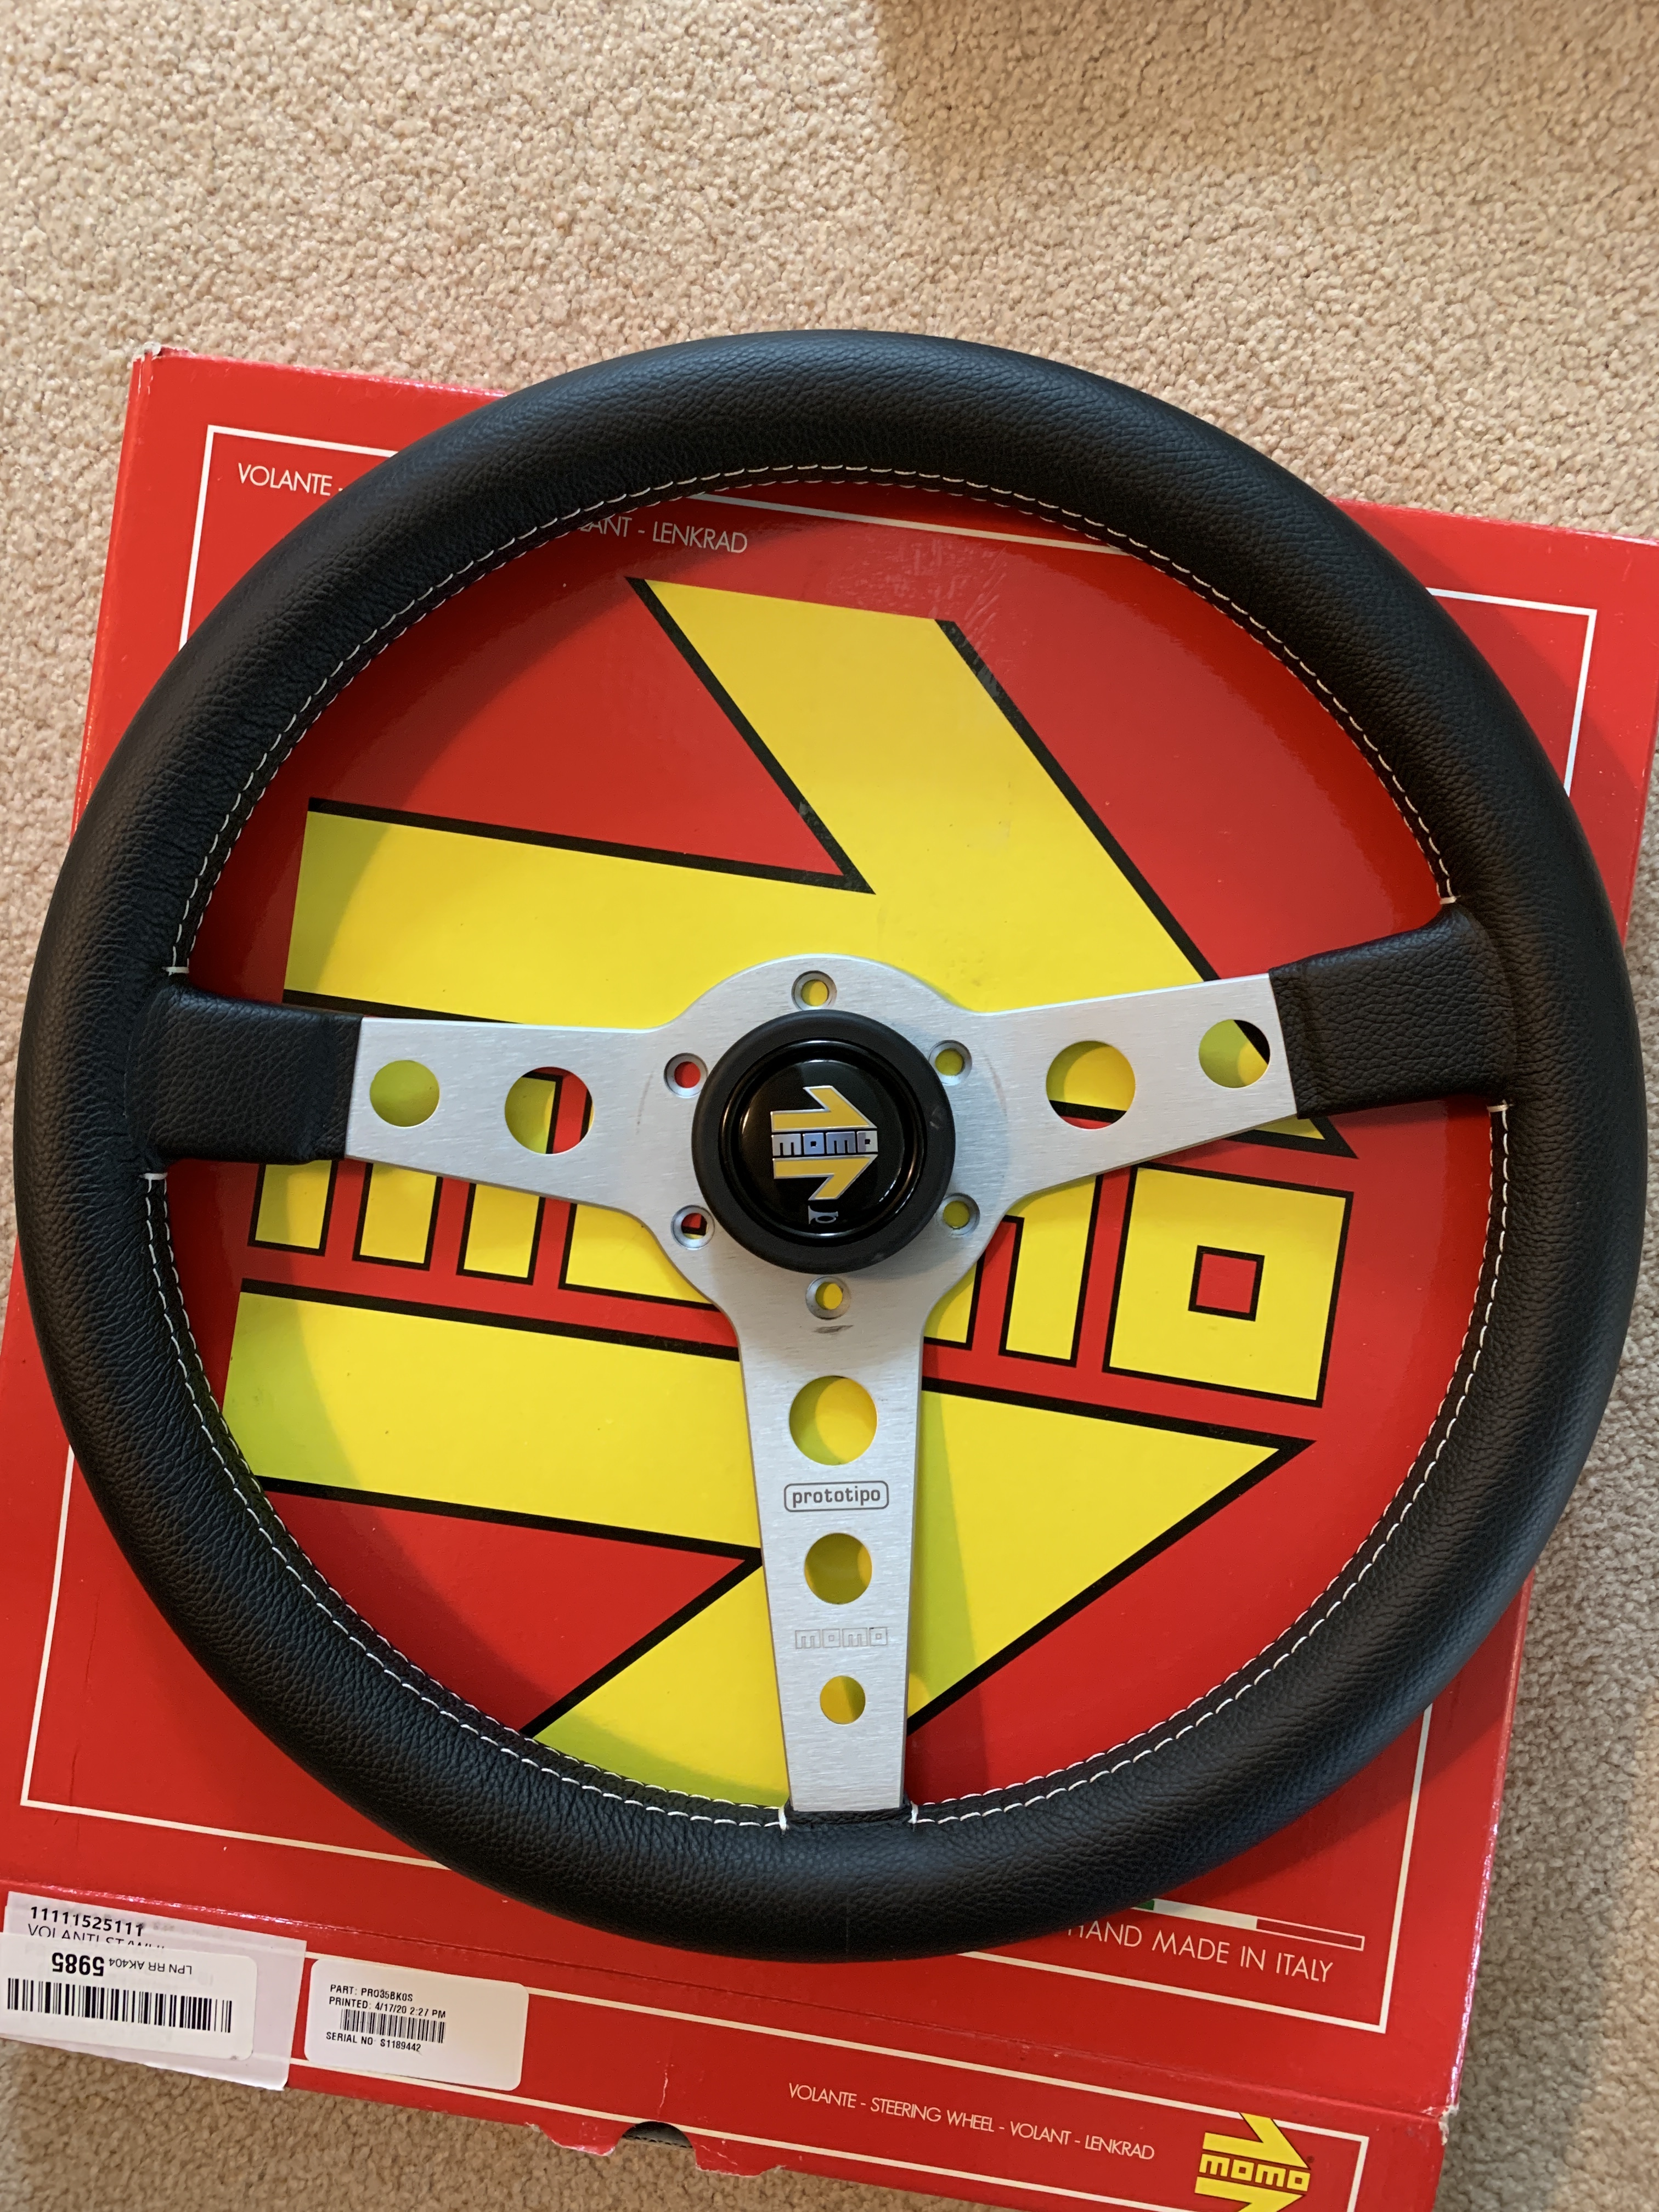 New MOMO steering wheel “SOLD”